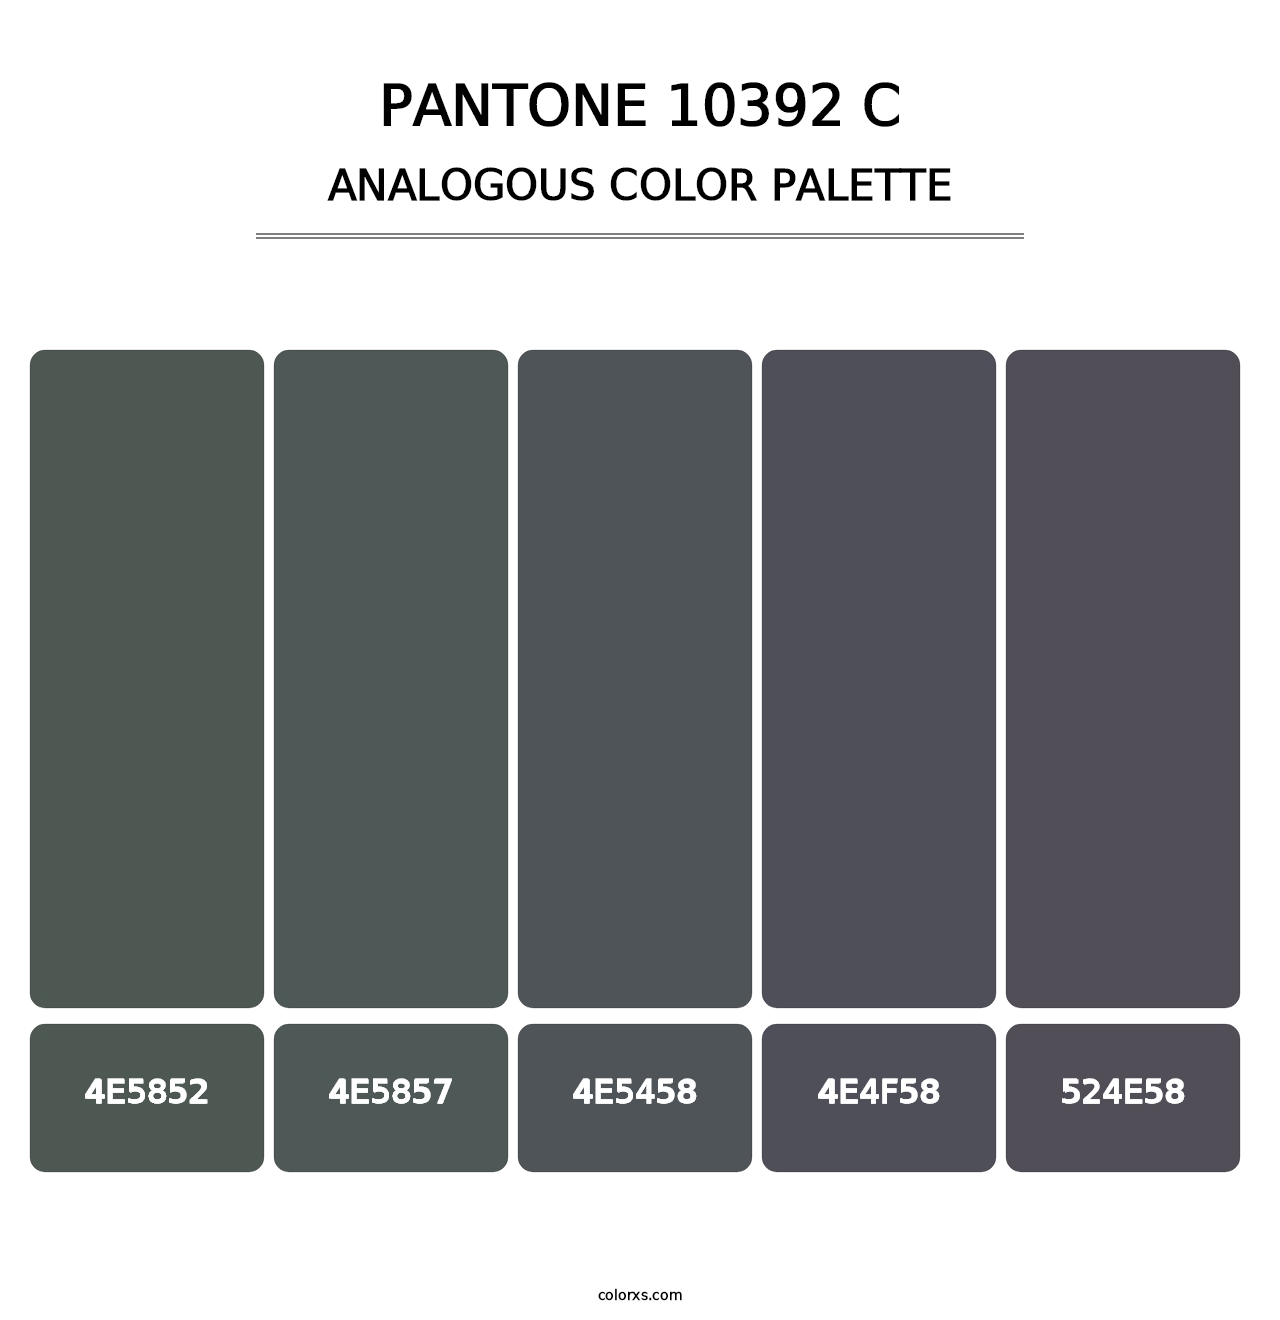 PANTONE 10392 C - Analogous Color Palette